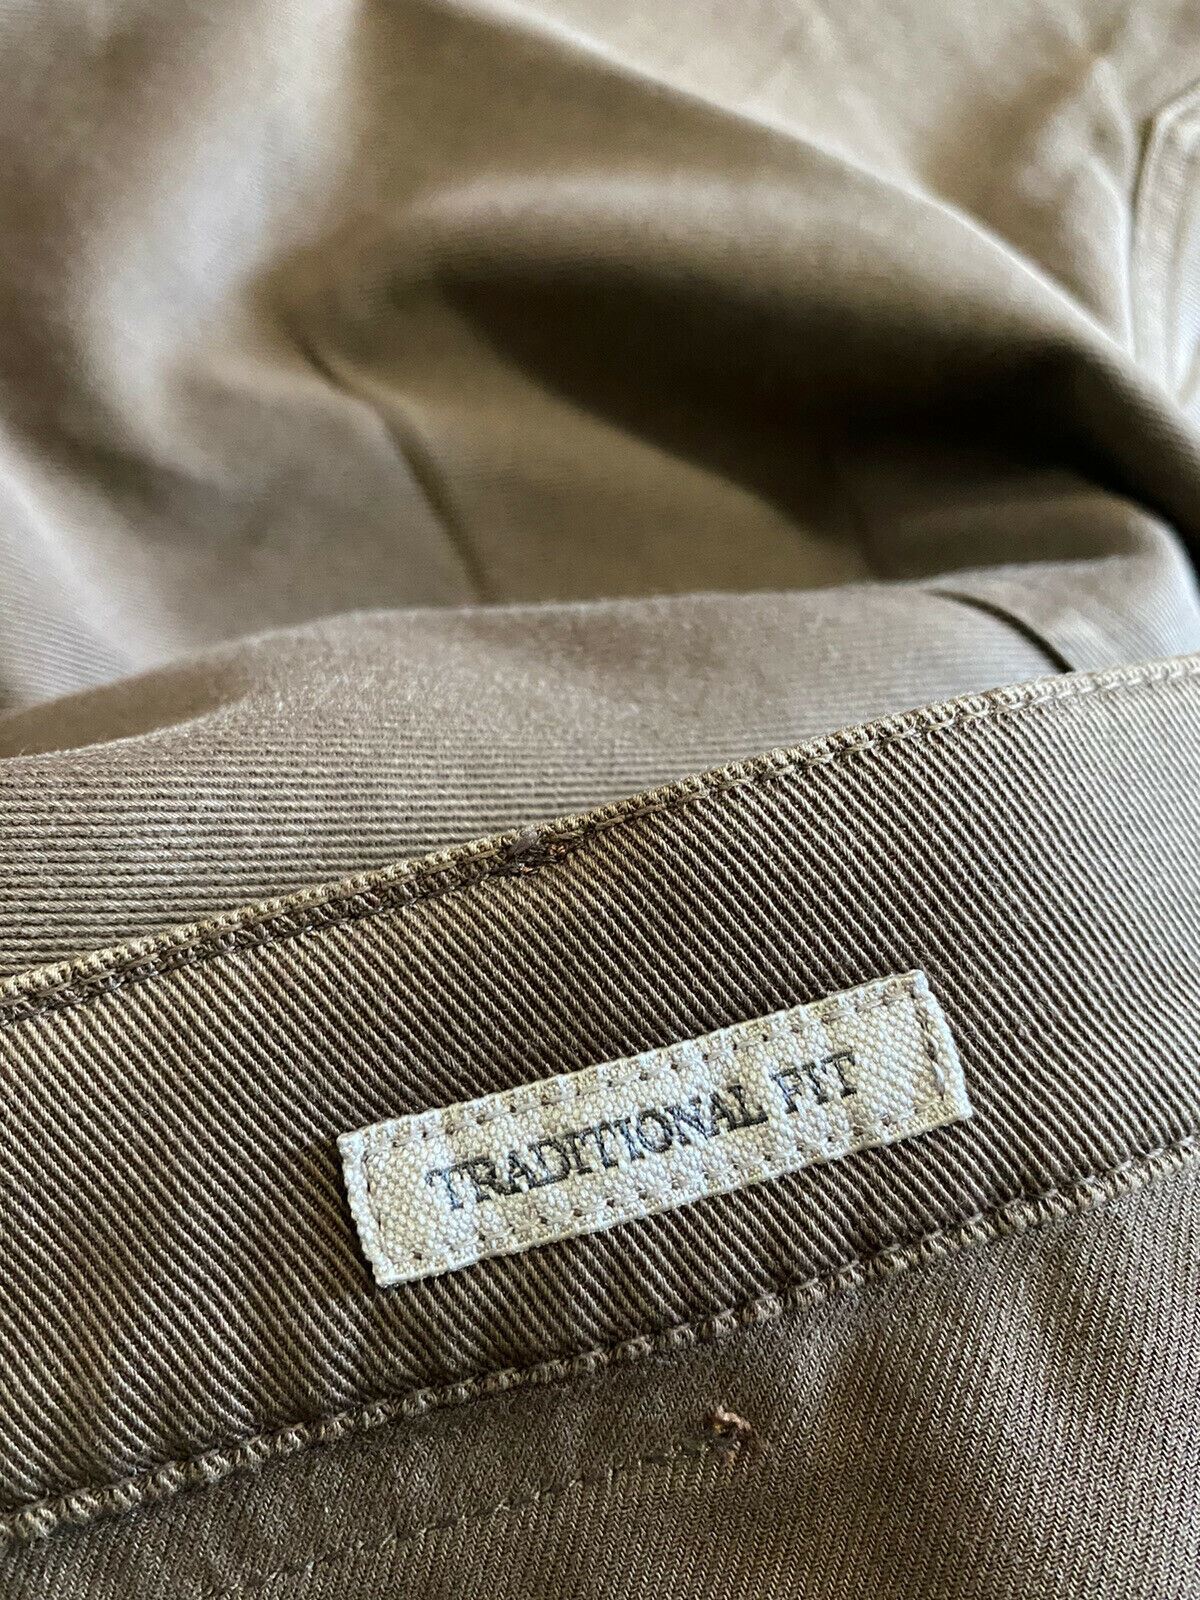 Мужские джинсовые брюки Brunello Cucinelli 975 долларов США коричневые 36 США/52 ЕС Италия